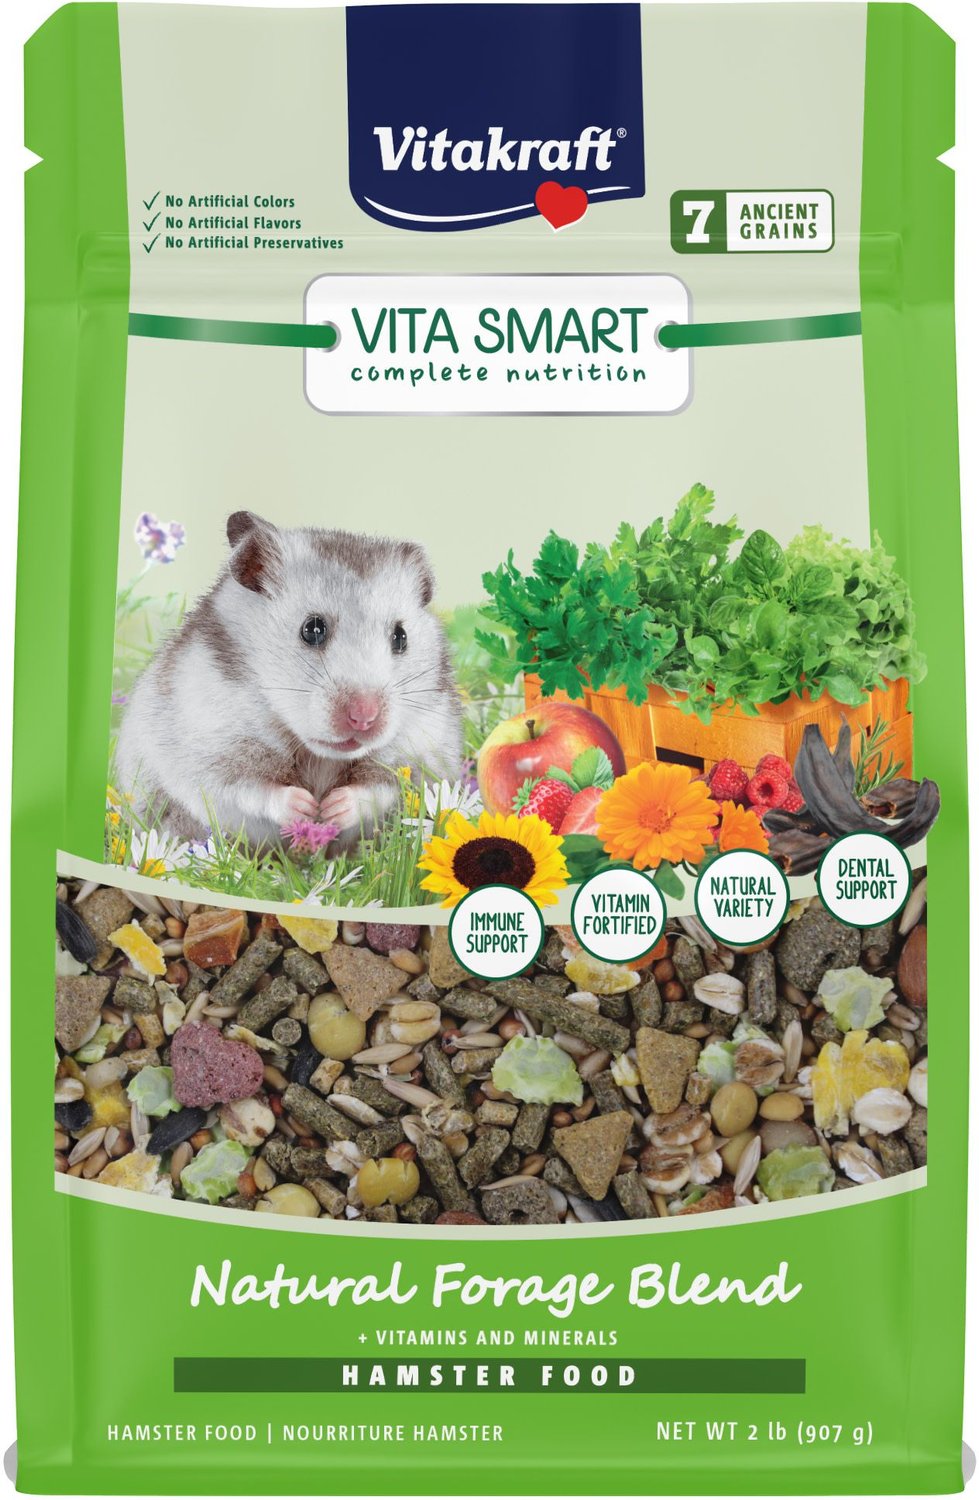 7. Vitakraft VitaSmart Complete Nutrition